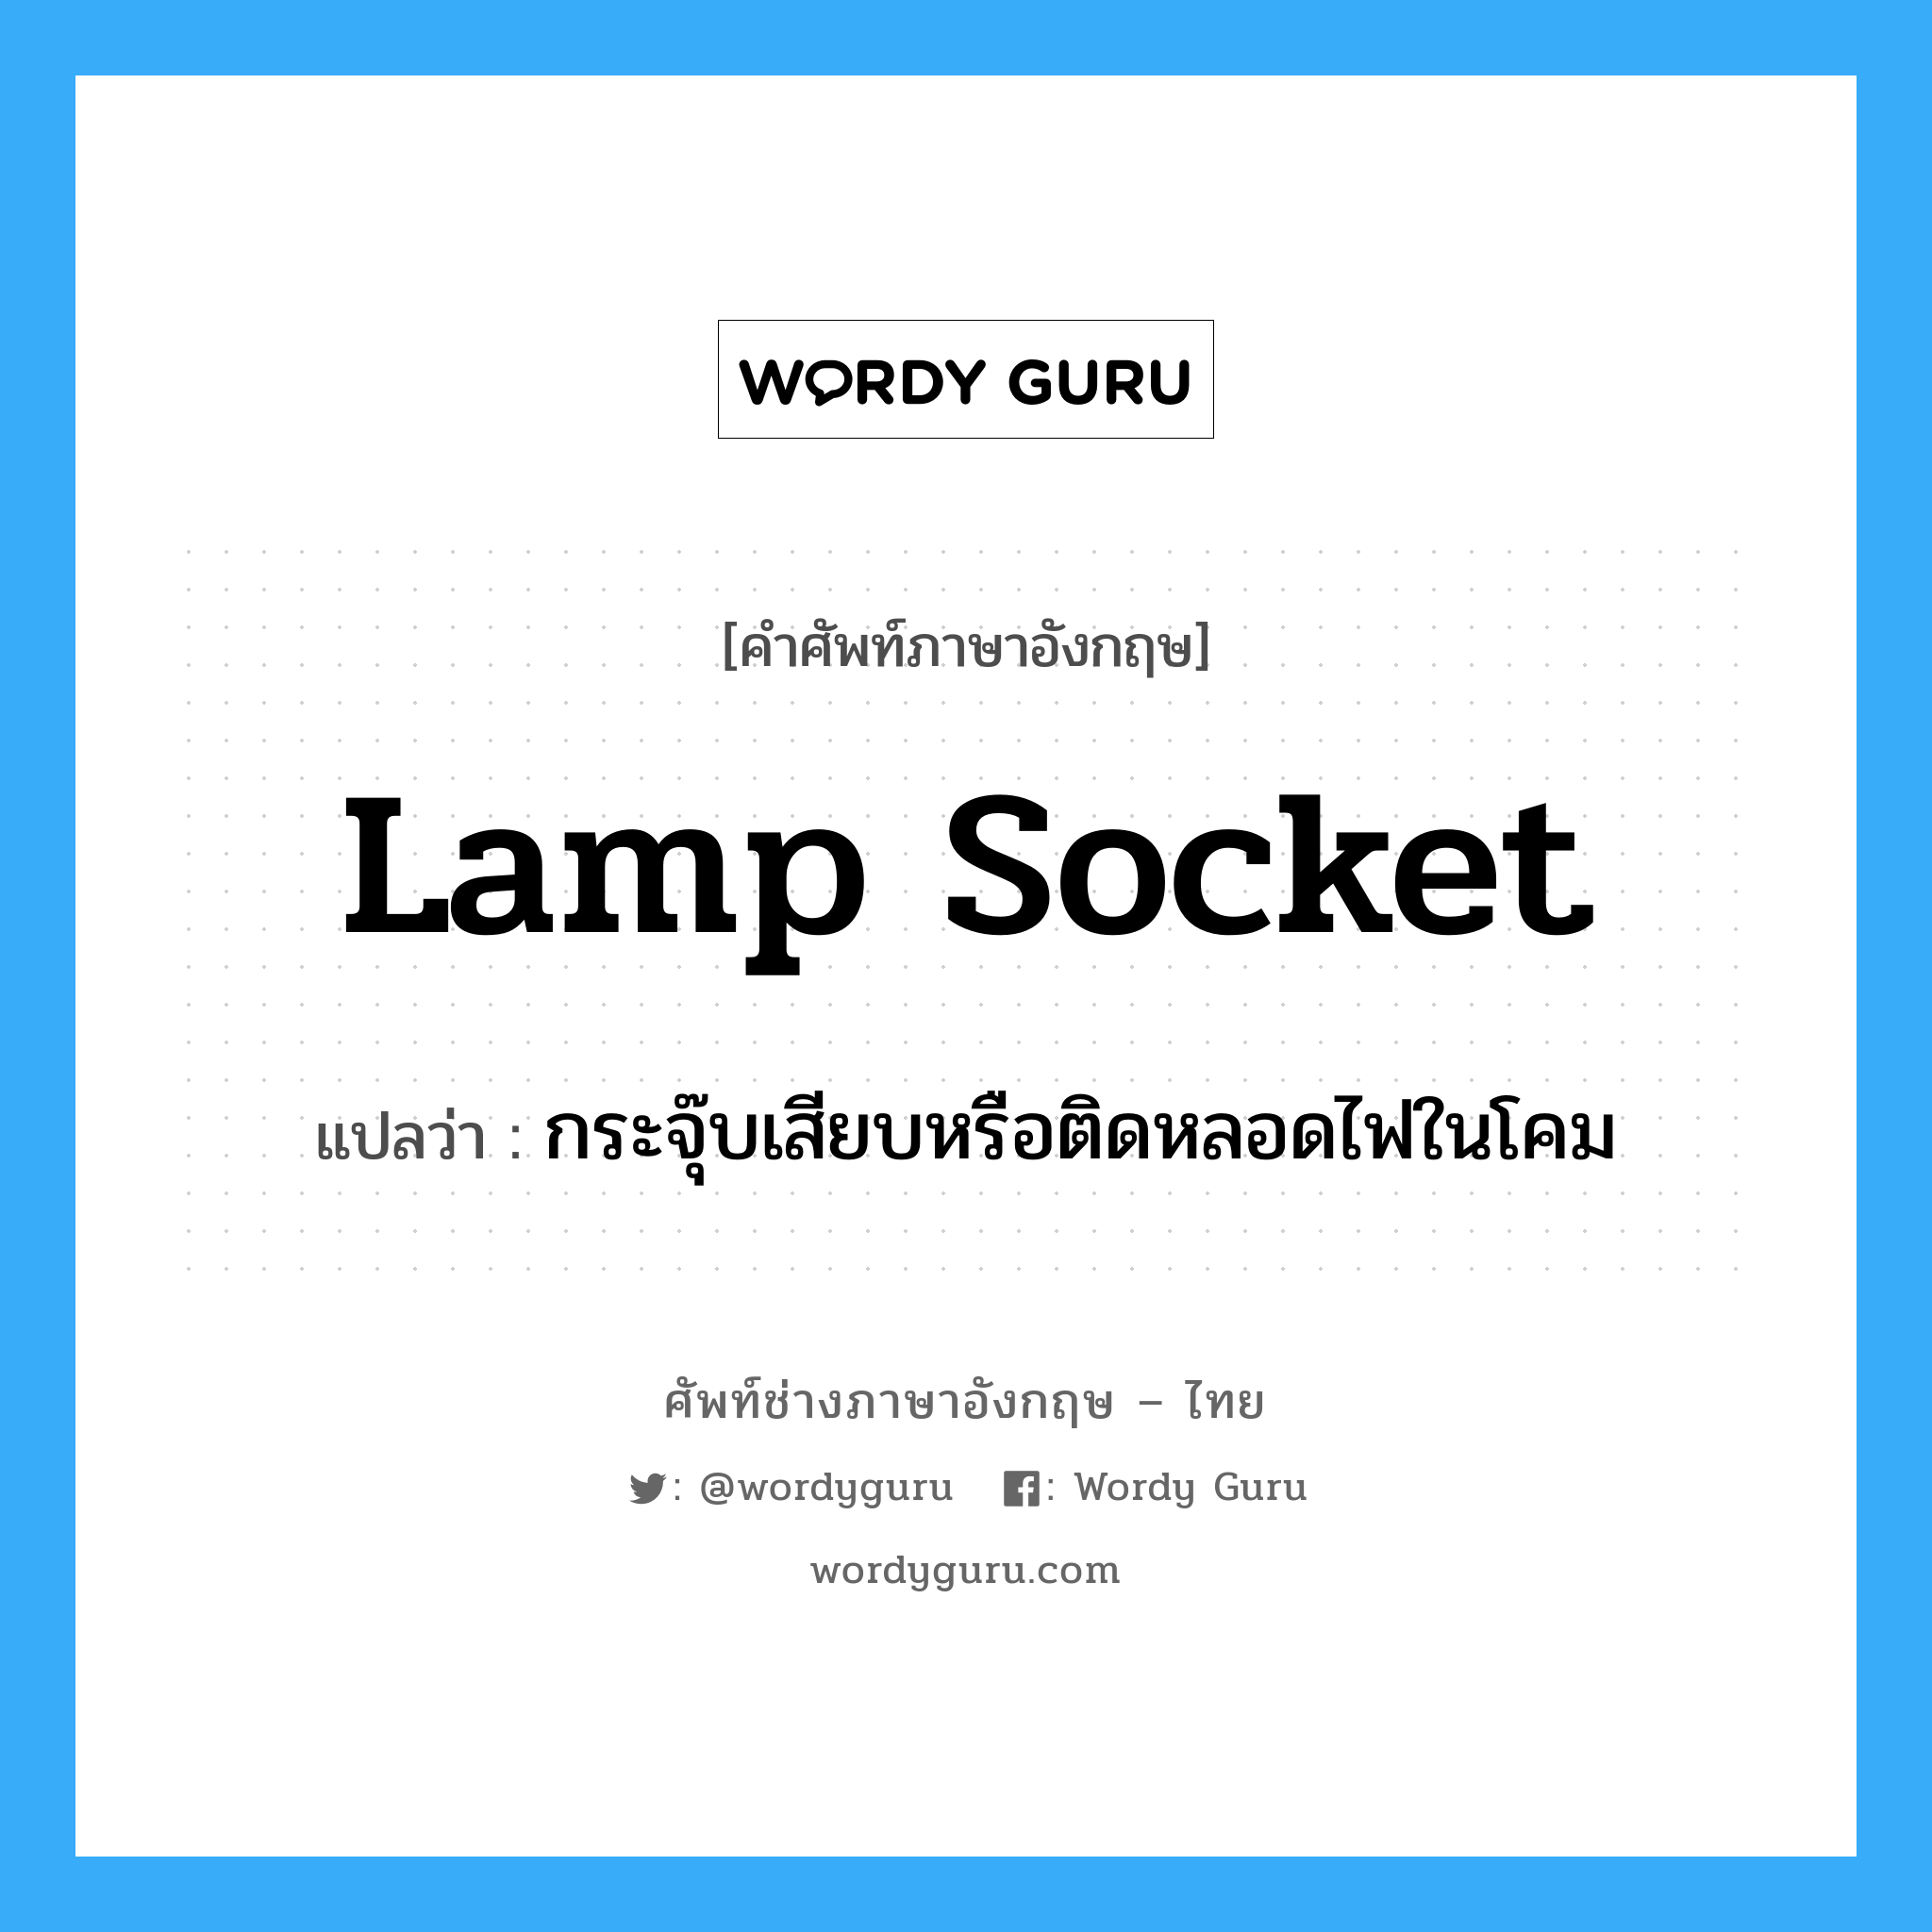 lamp socket แปลว่า?, คำศัพท์ช่างภาษาอังกฤษ - ไทย lamp socket คำศัพท์ภาษาอังกฤษ lamp socket แปลว่า กระจุ๊บเสียบหรือติดหลอดไฟในโคม